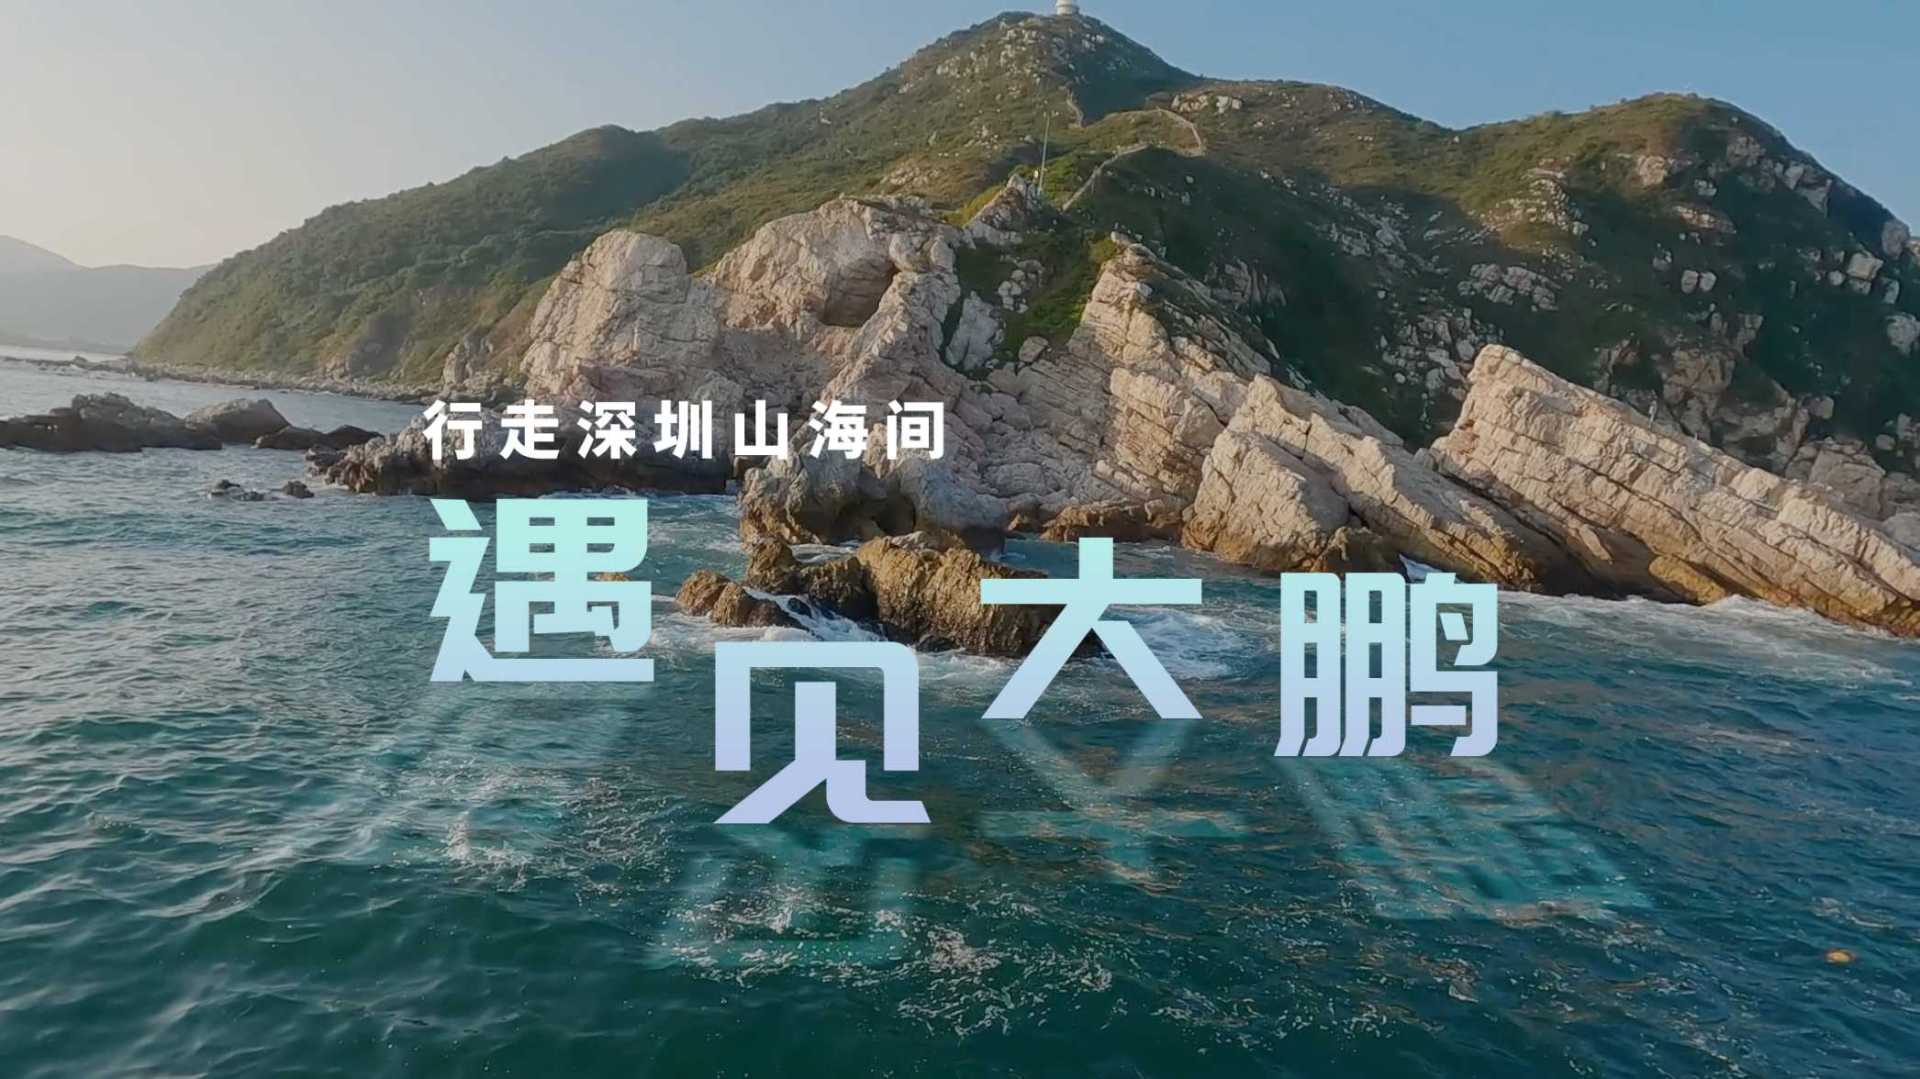 《遇见大鹏》深圳大鹏郊野径宣传片